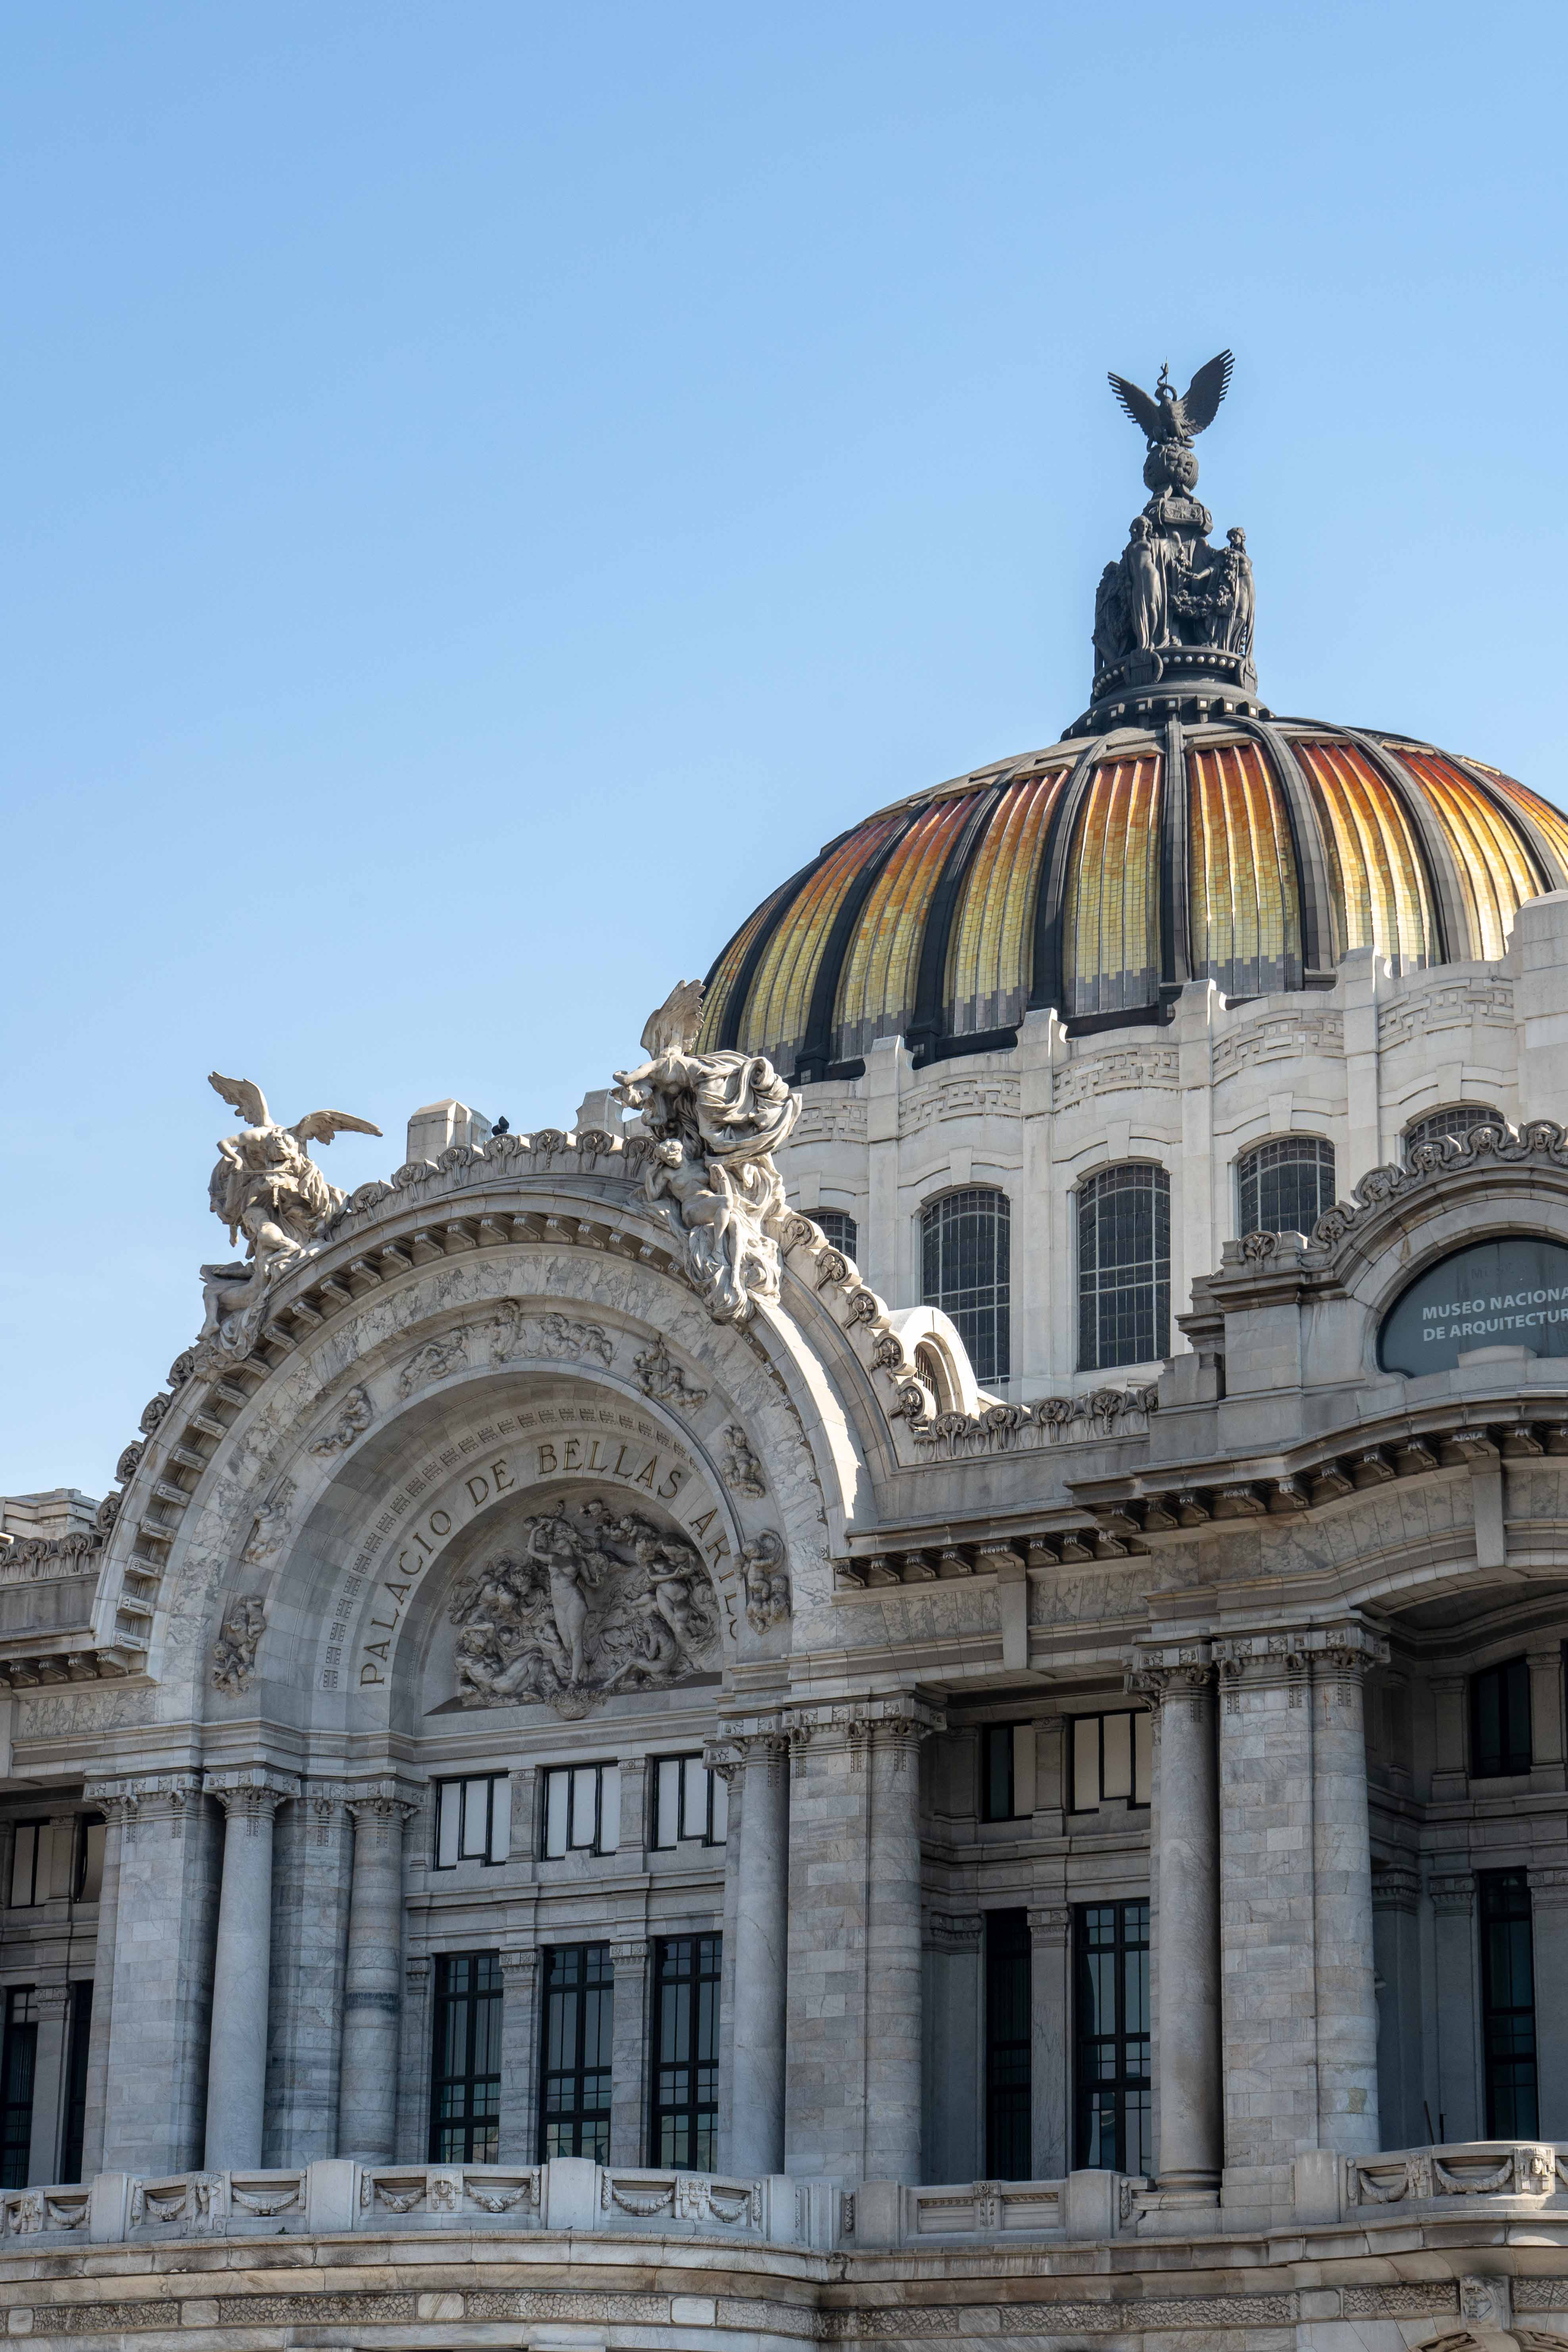 En marbre blanc, le Palacio de Bellas Artes est l'un des plus beaux monuments de Mexico City. Il ravira les amateurs des muralistes mexicains.